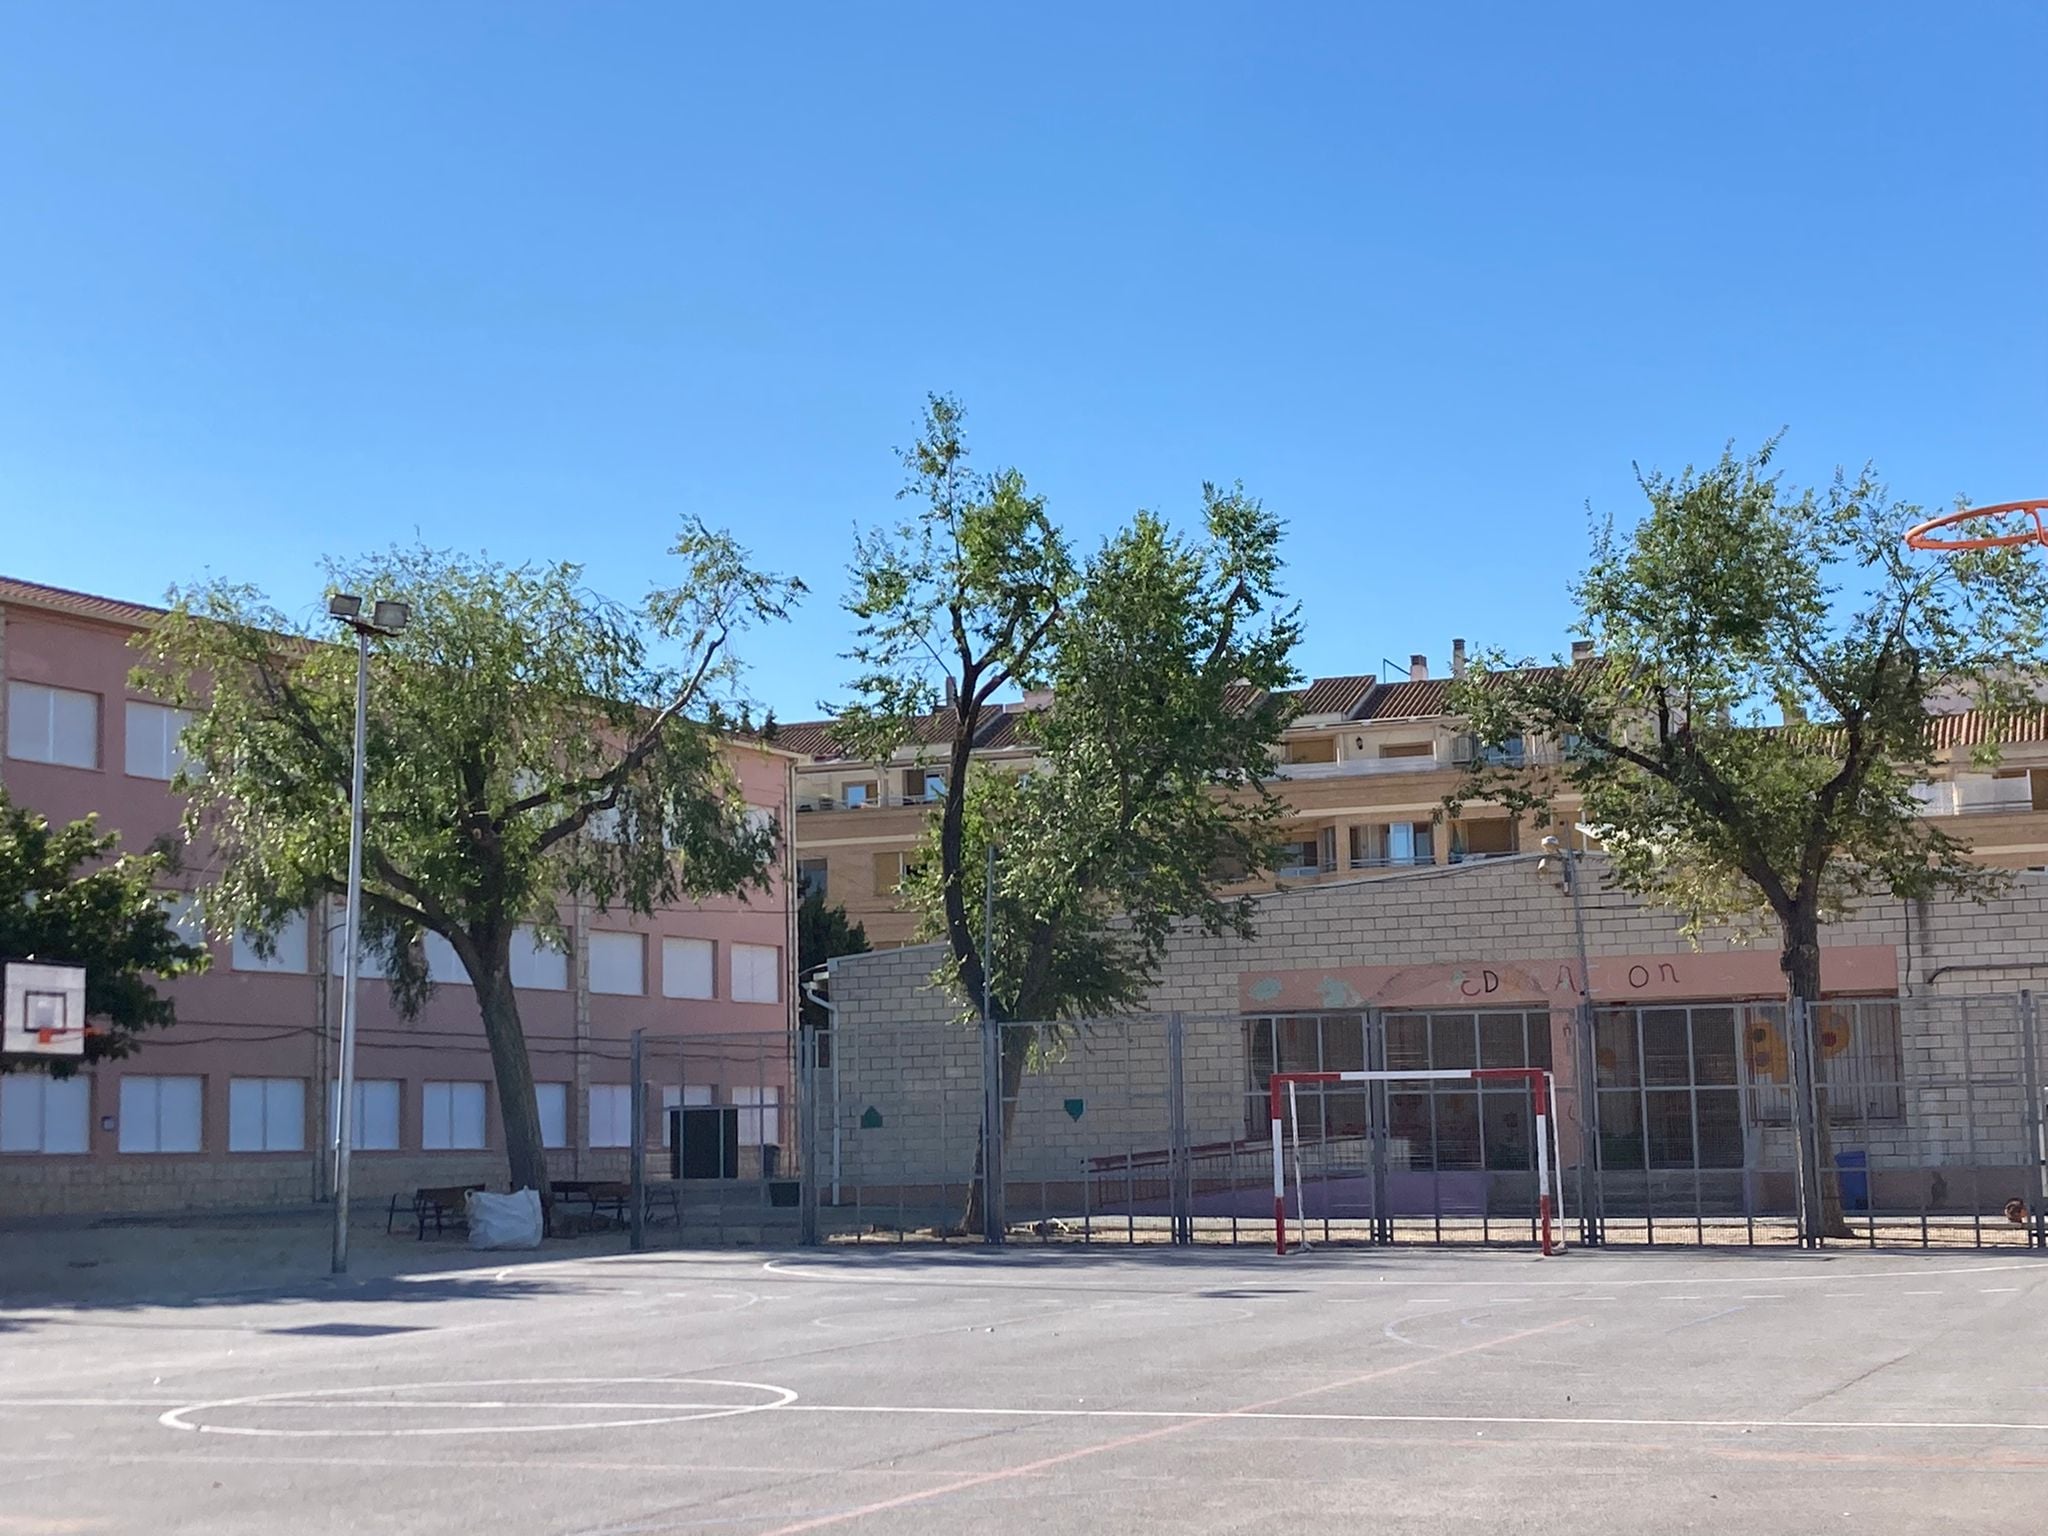 Villena tramitará el proyecto de construcción del nuevo colegio Príncipe Don Juan Manuel